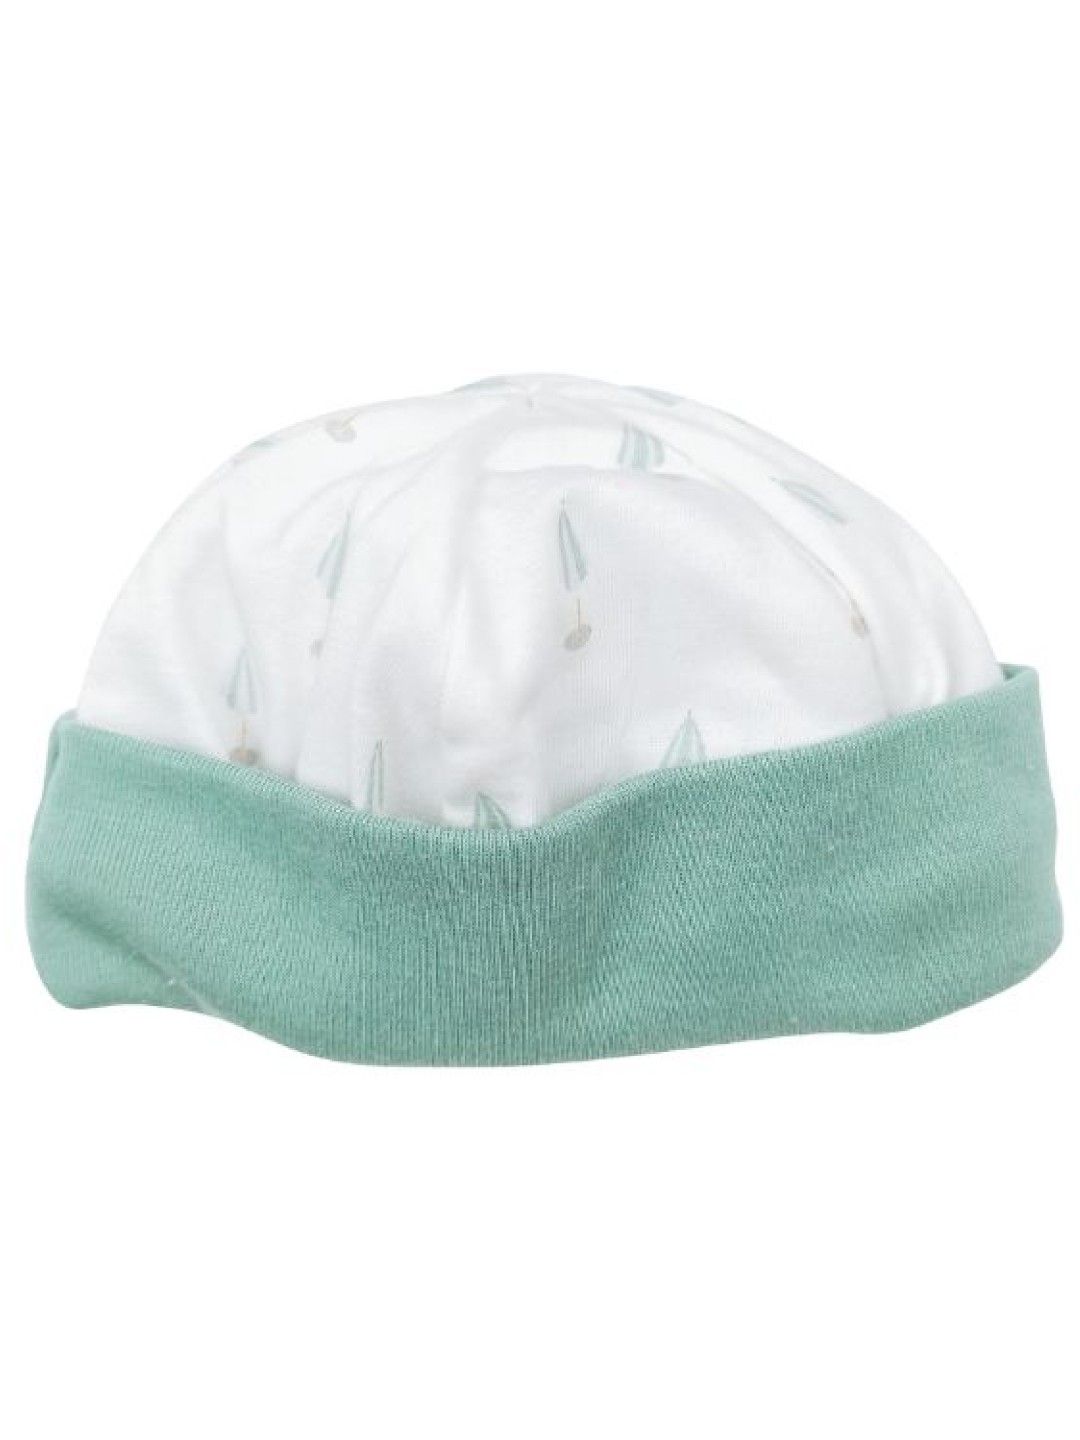 Peregrine Newborn Accessories 1-Piece Bonnet - Bains de Soleil Collection